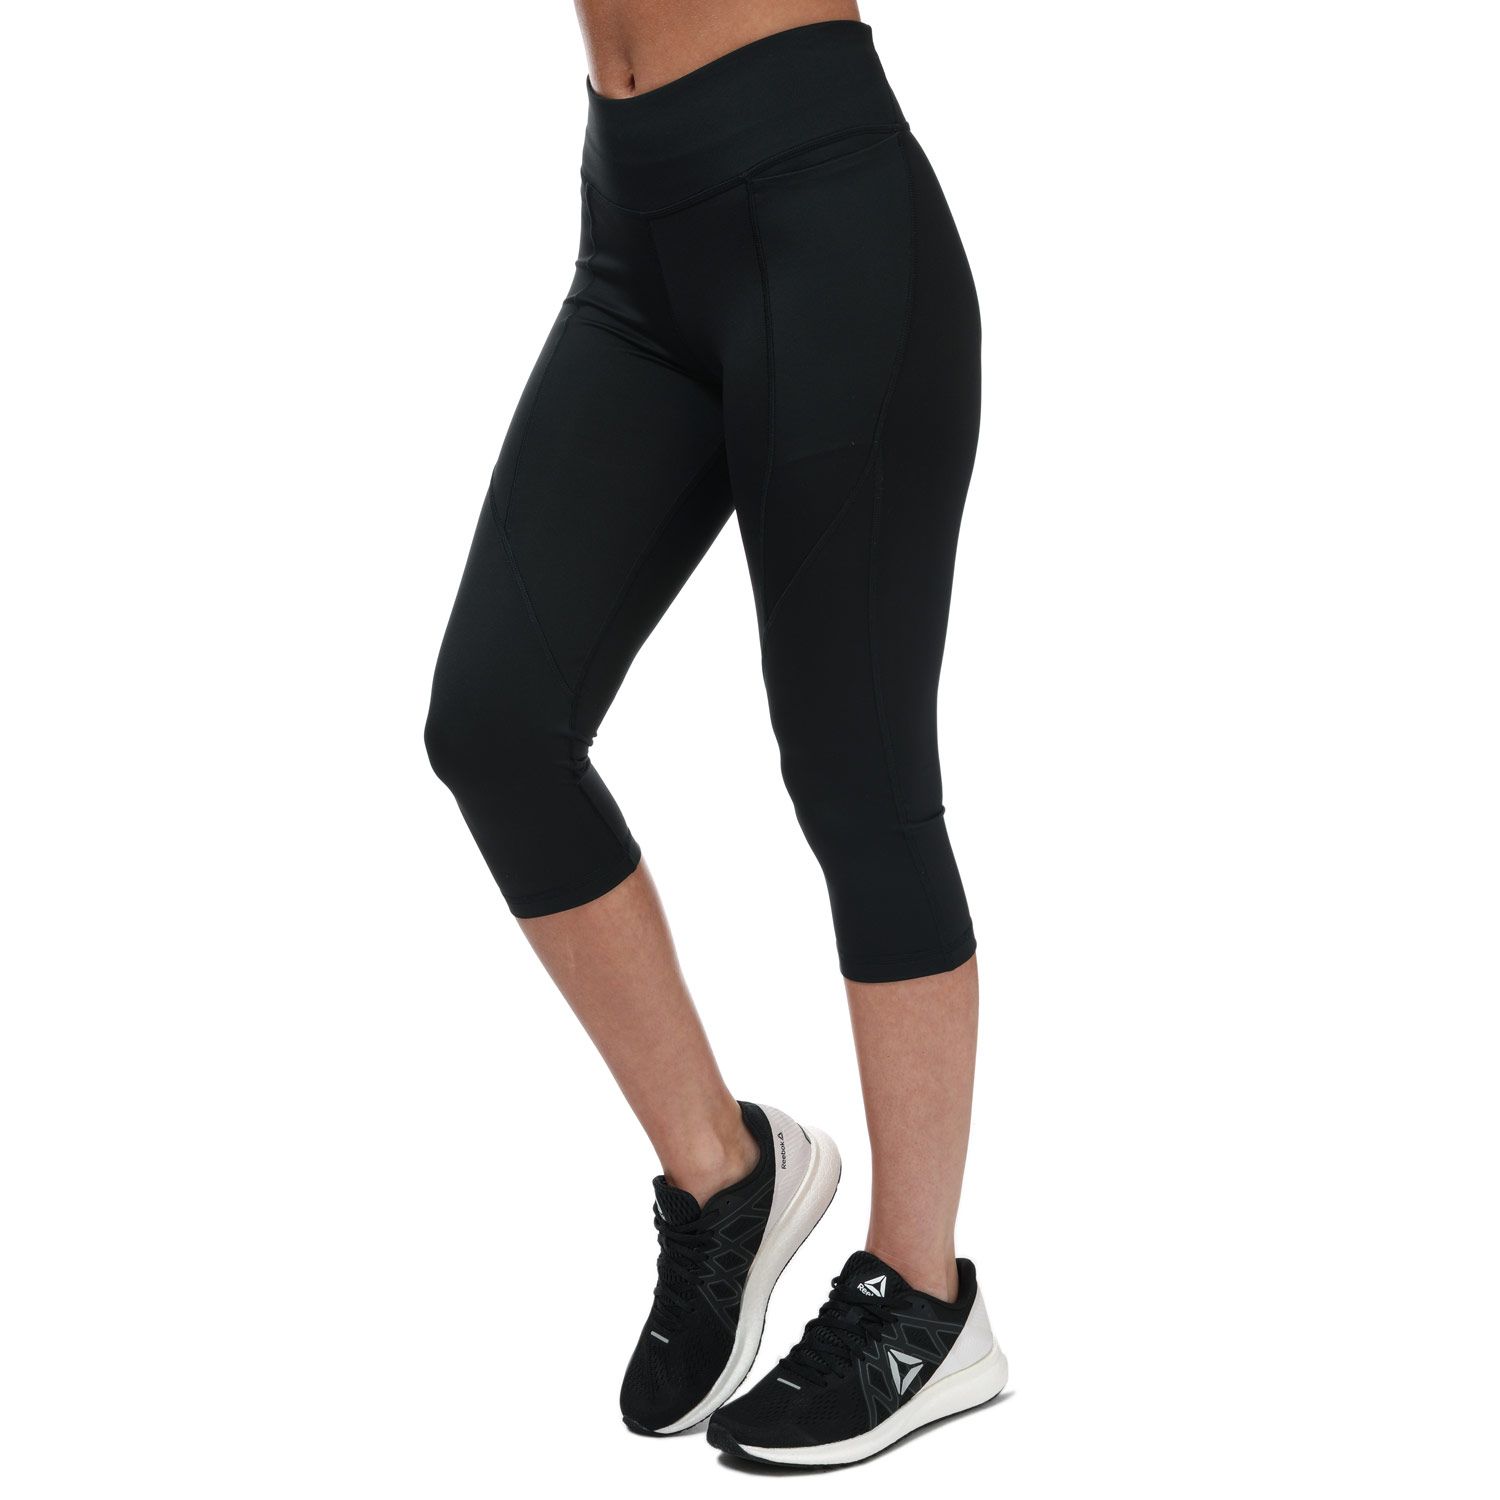 Reebok Women's Workout Ready Pant Program Bootcut Pants